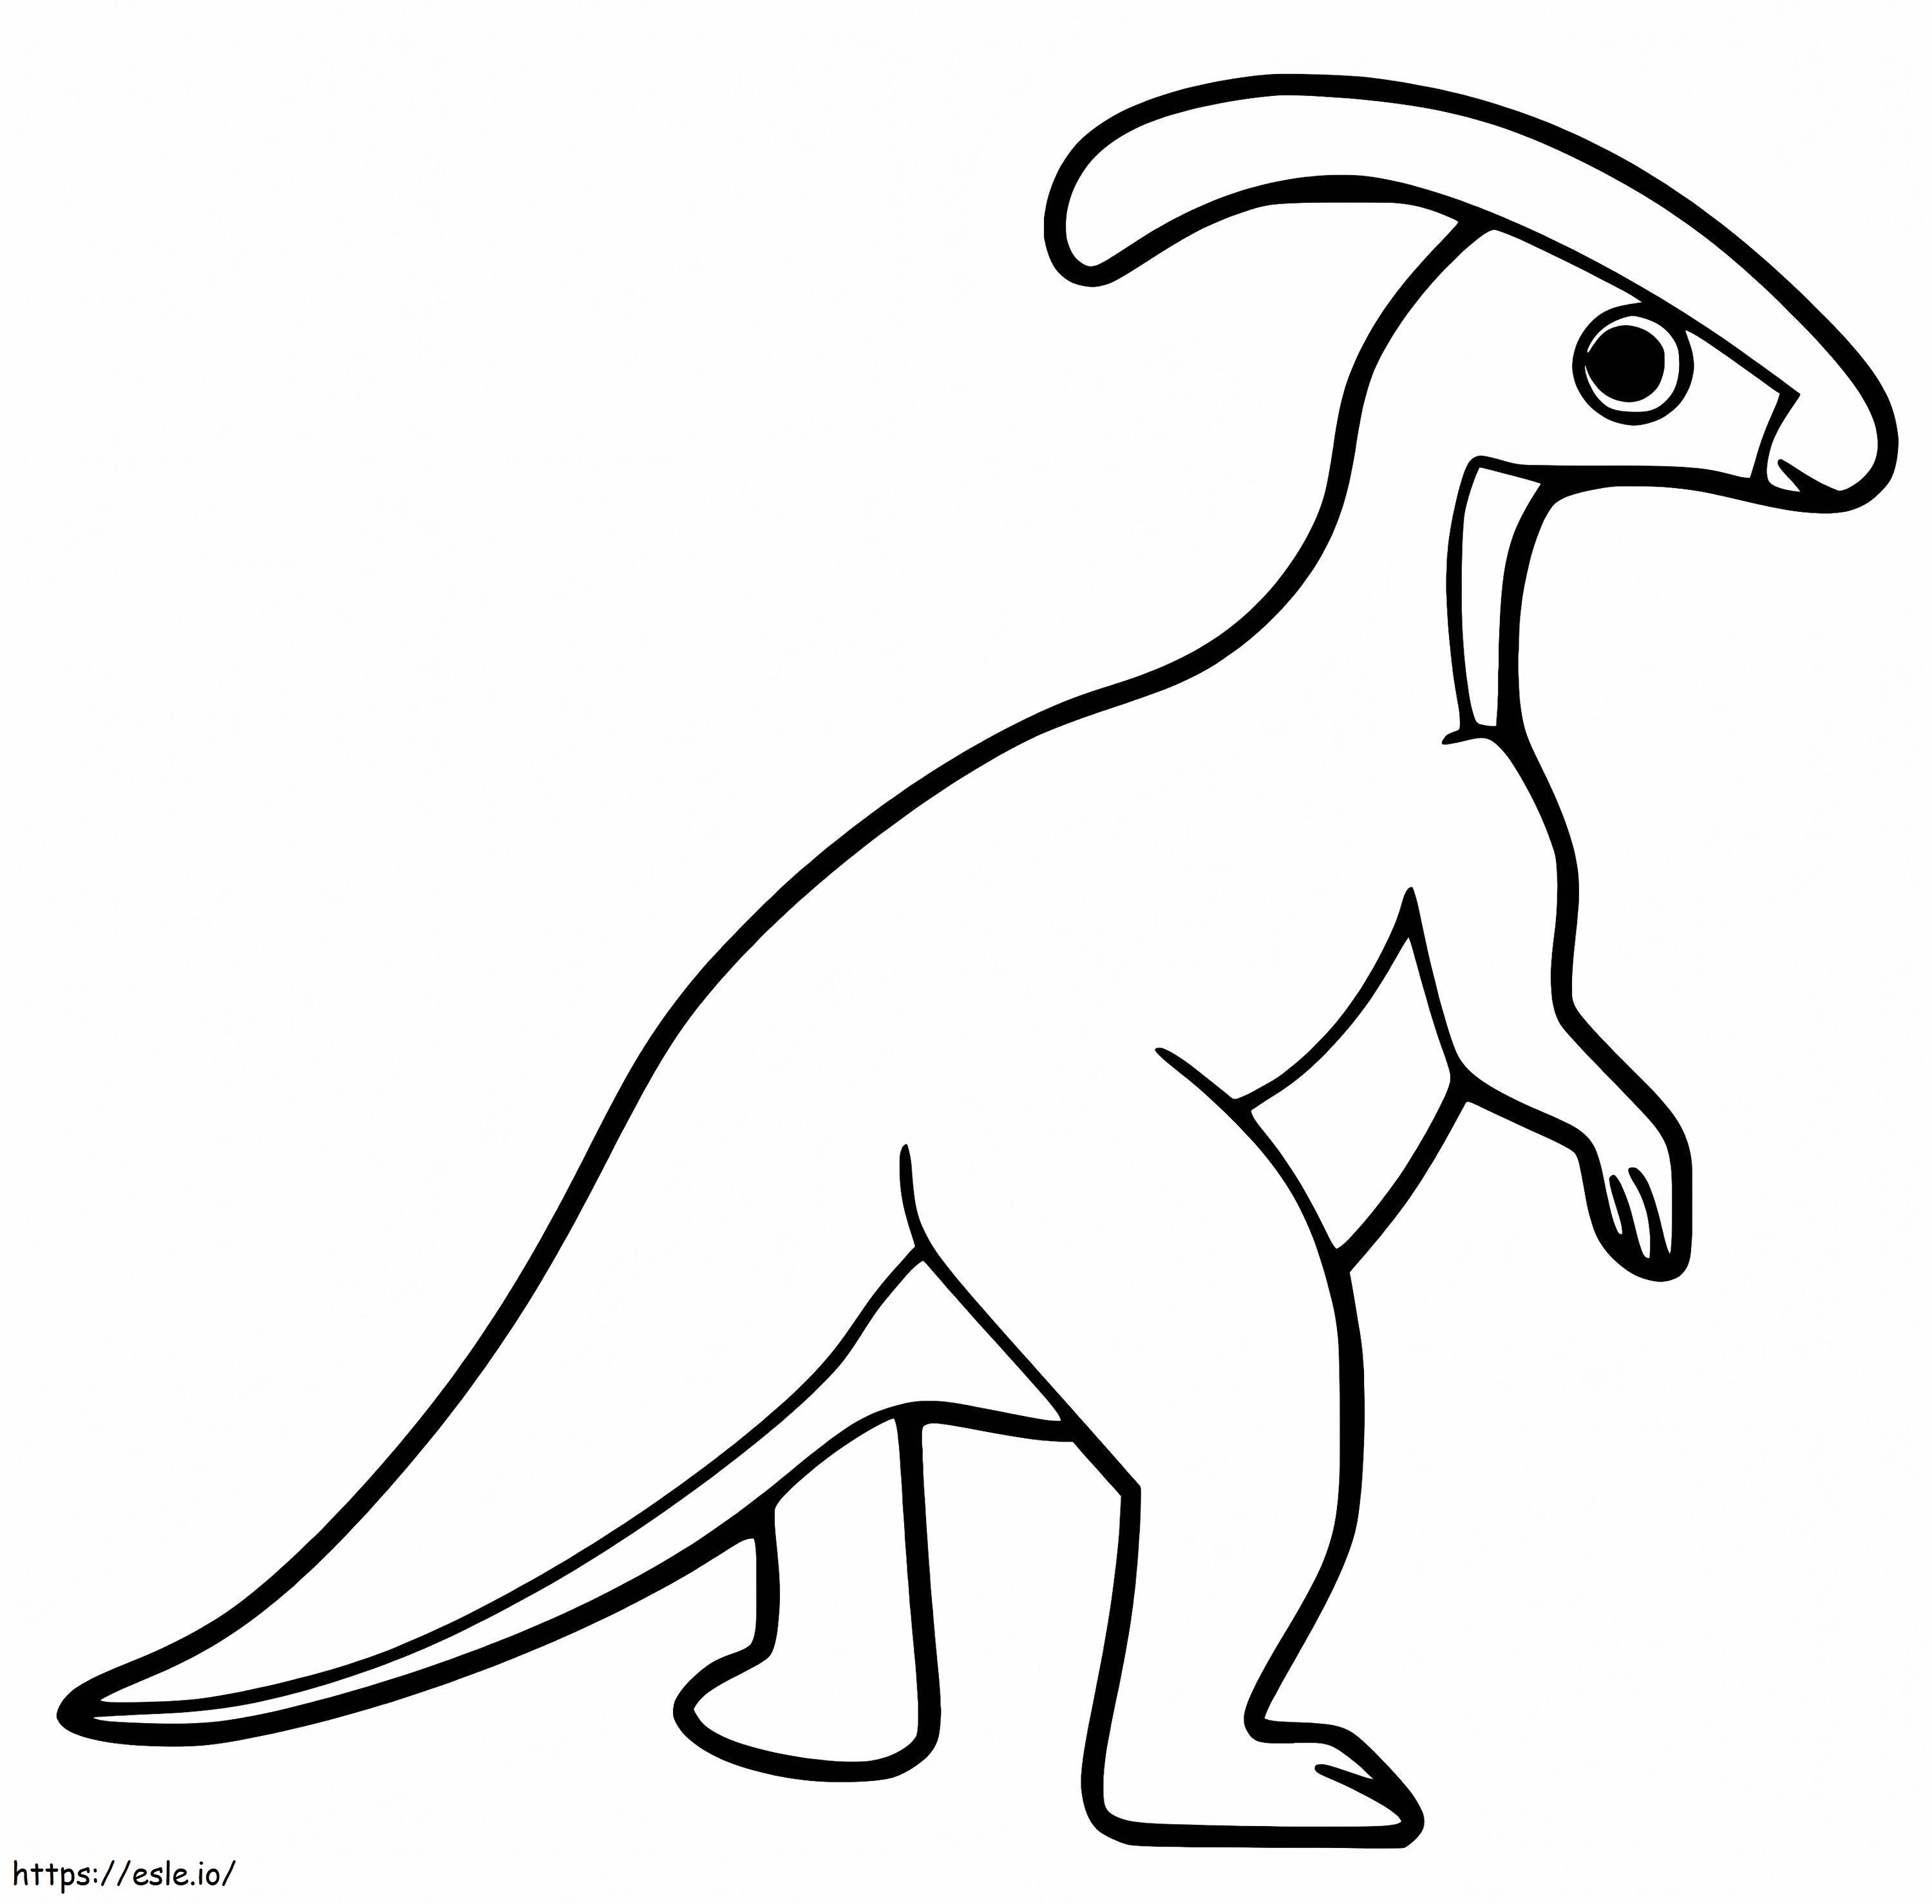 Coloriage Parasaurolophus mignon à imprimer dessin